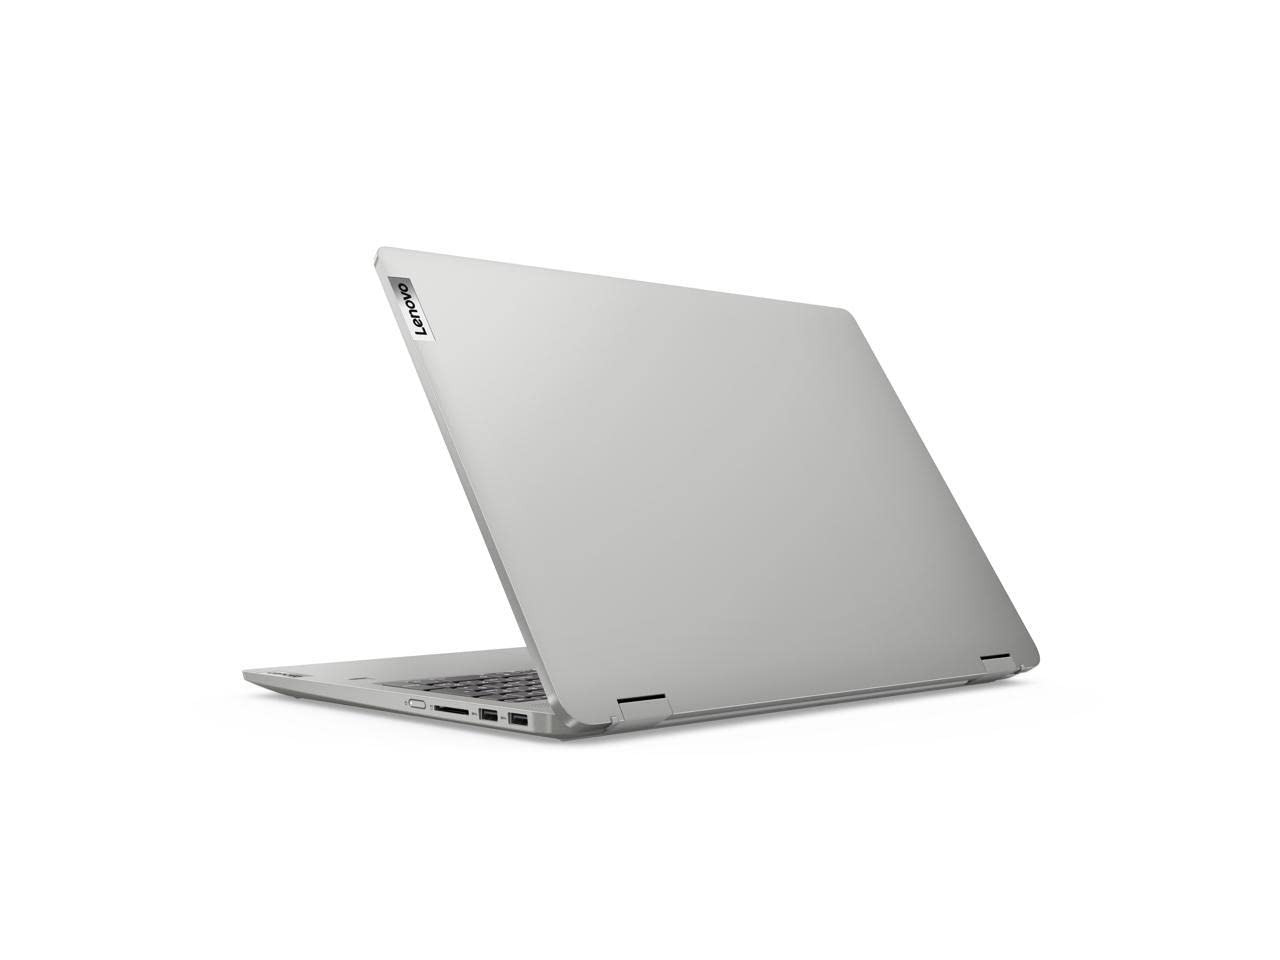 Lenovo Flex 5 16" FHD+(1920x1200) Touchscreen 2-in-1 Laptop | AMD 8-Core Ryzen 7 5700U Processor | Backlit Key | Fingerprint | WiFi 6 | USB-C | 16GB DDR4 2TB NVMe SSD | Win10 Home | Stylus Pen